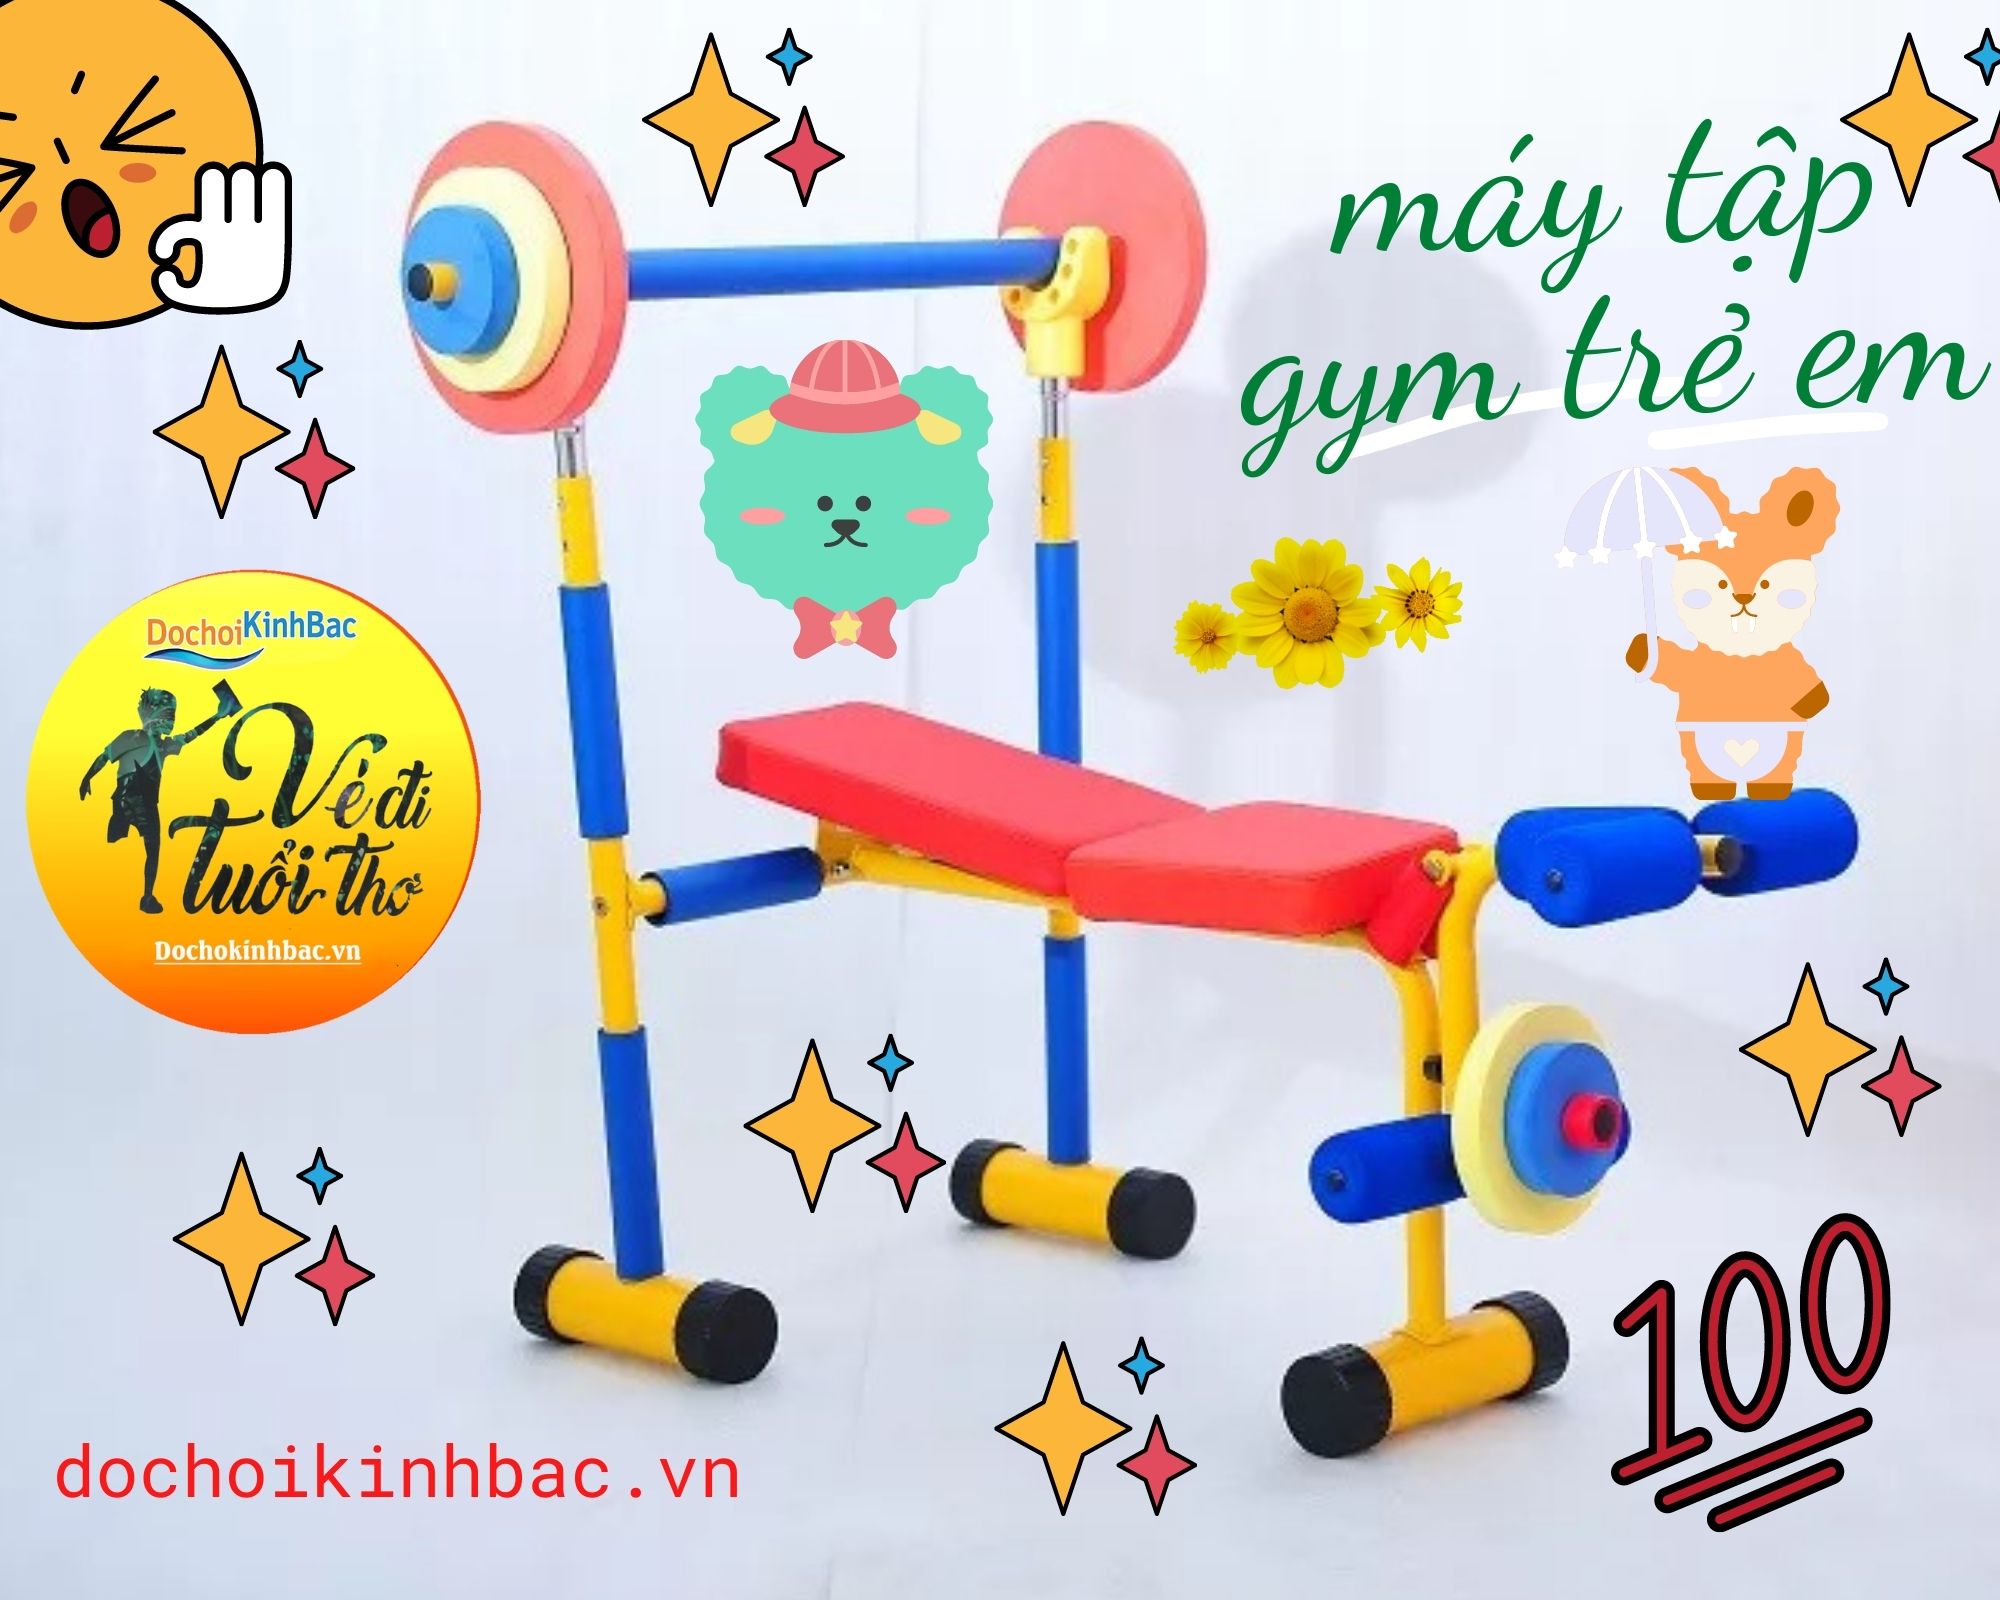 Bật mí top 5 mẫu máy tập gym trẻ em được đánh giá cao nhất  tại xã Cẩm Văn, Cẩm Giang, Hải Dương